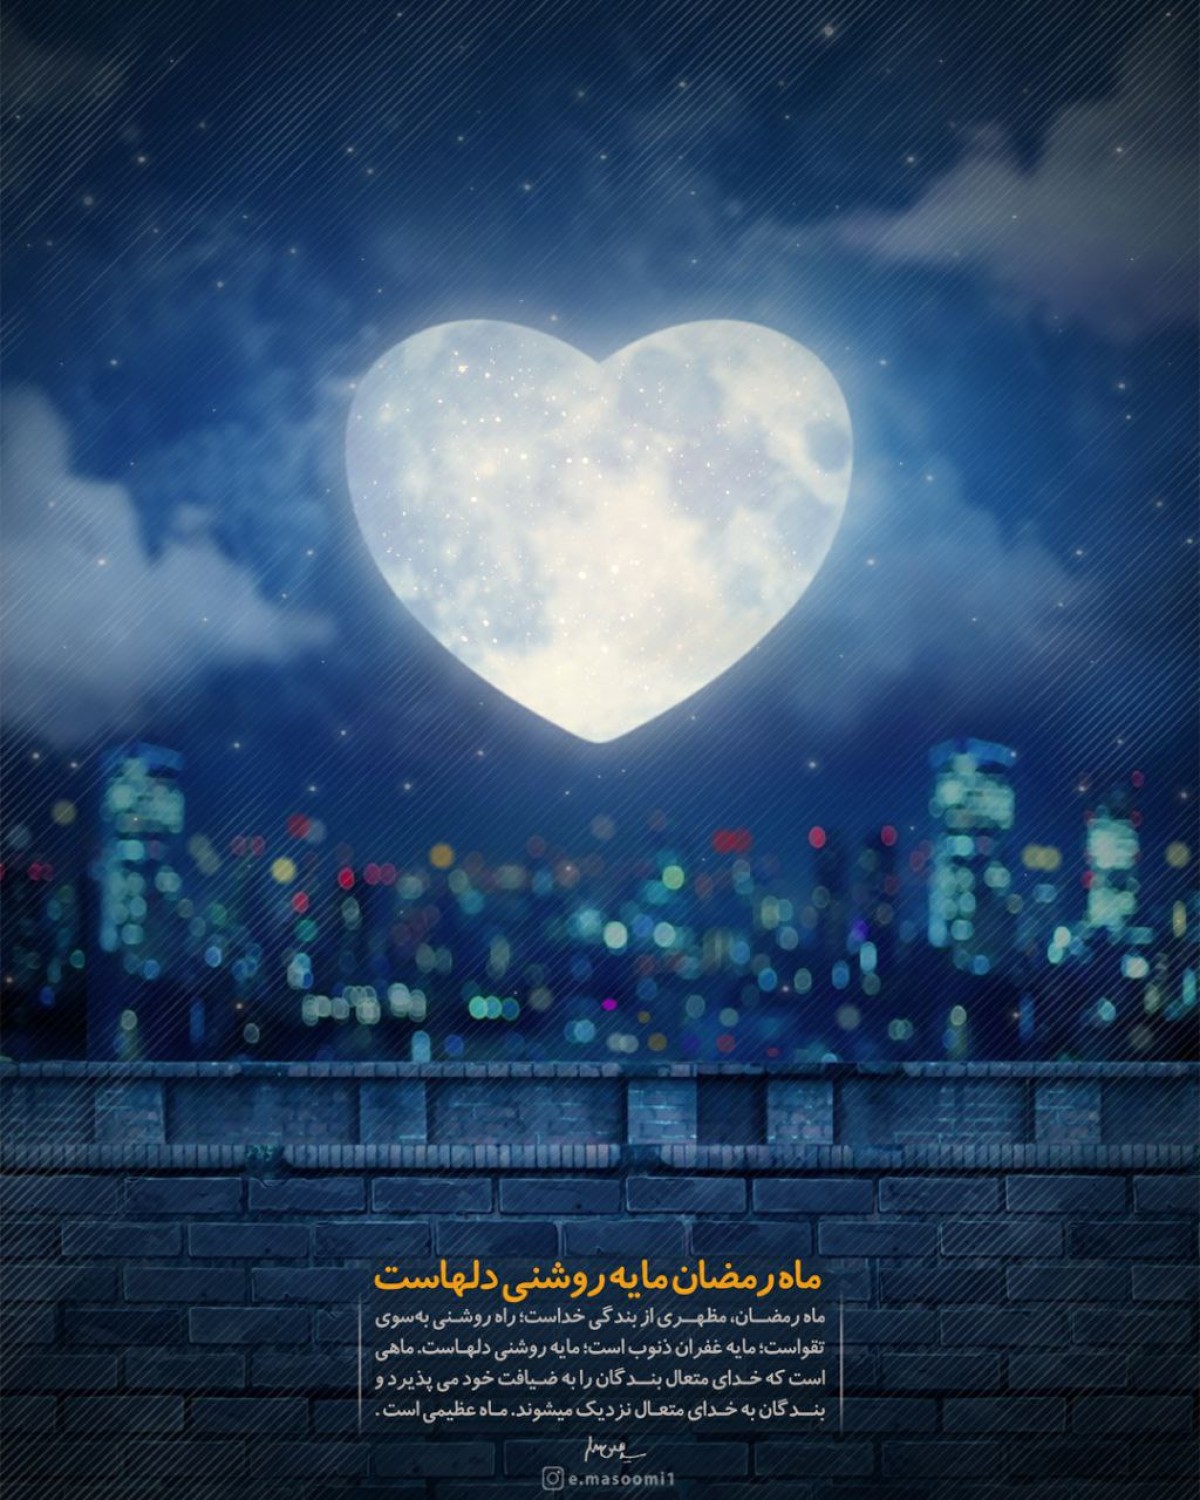 ماه رمضان مایه روشنی دلهاست